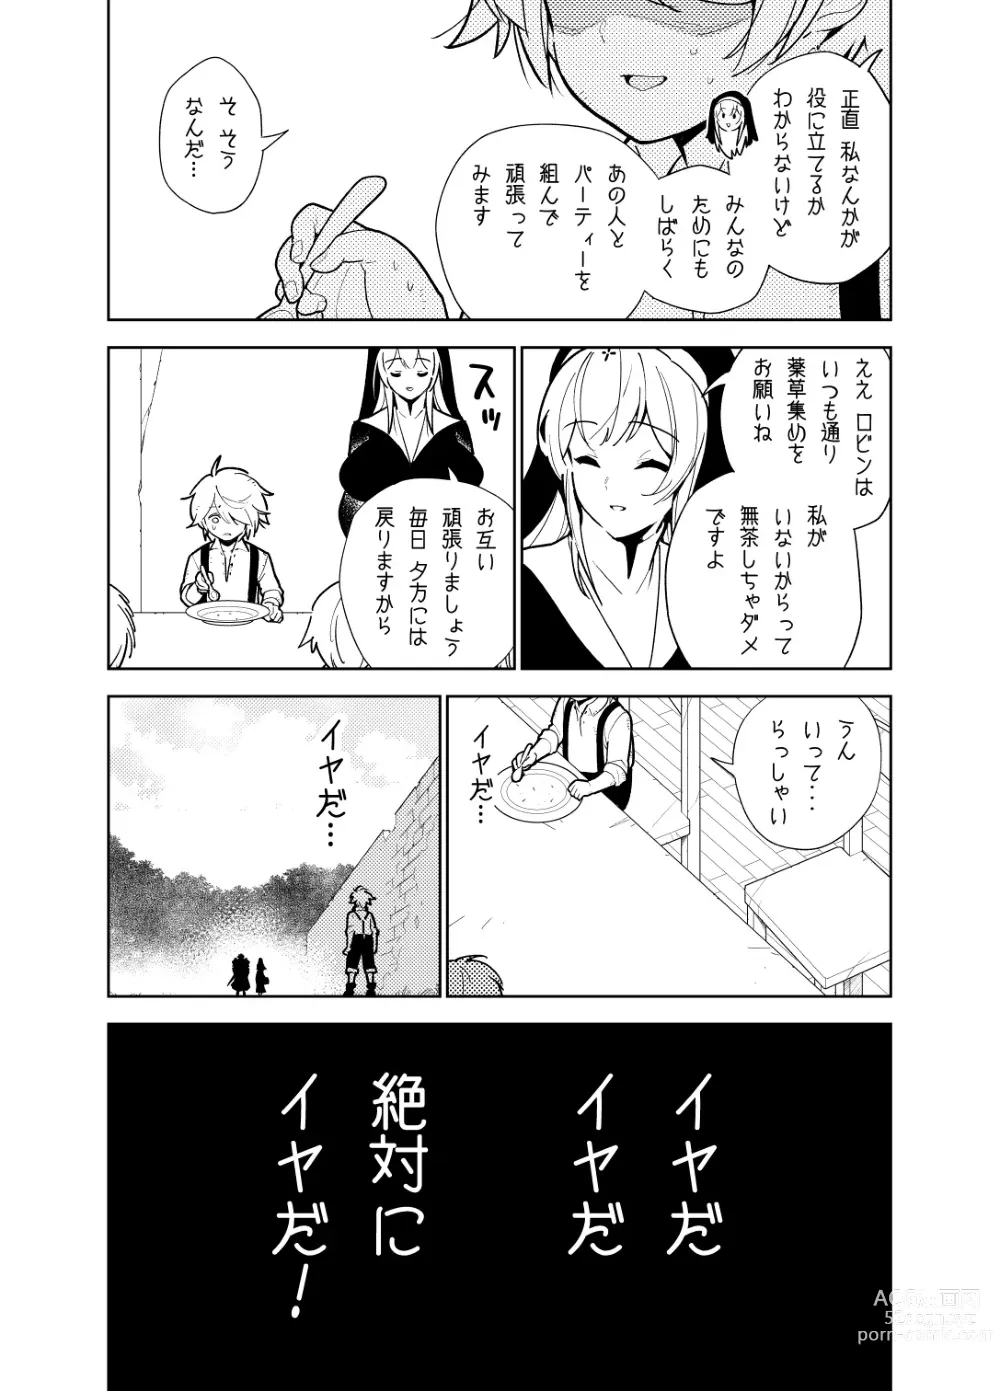 Page 19 of doujinshi Akogare no Onee-chan no Ecchi na Status ga Mieru you ni Nacchatta Boku wa...